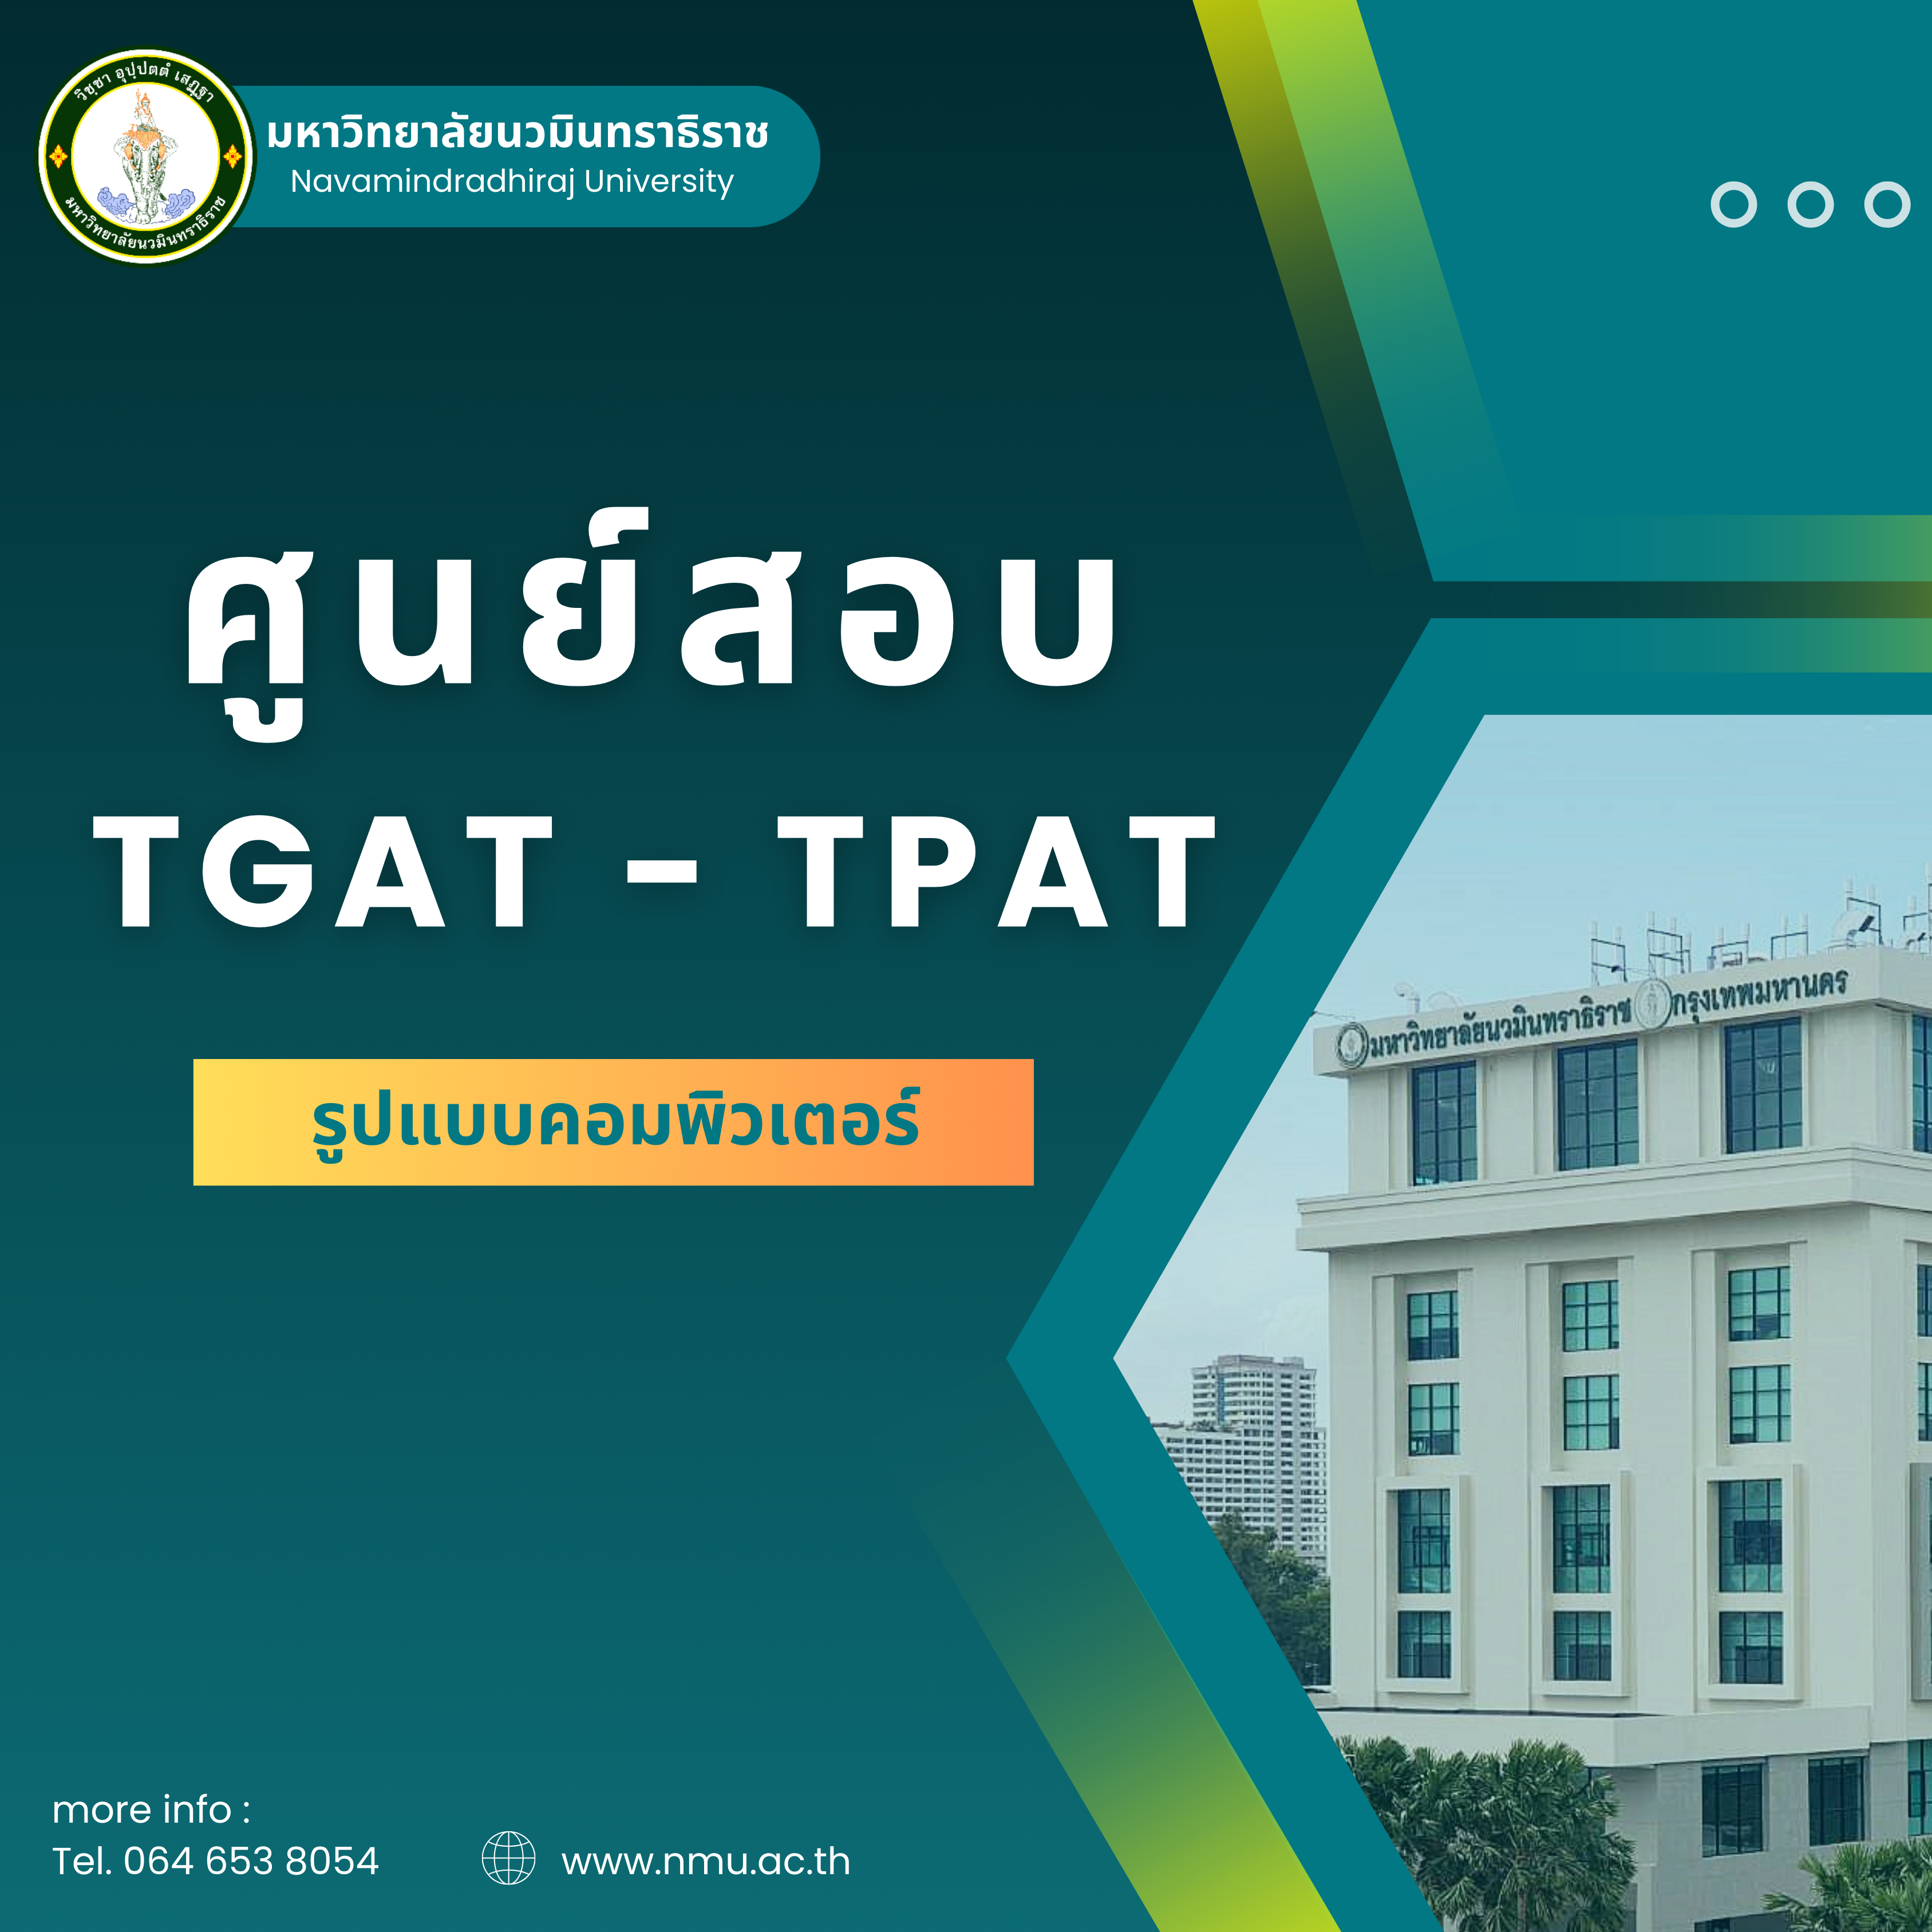 มหาวิทยาลัยนวมินทราธิราช เป็นศูนย์สอบ TGAT-TPAT